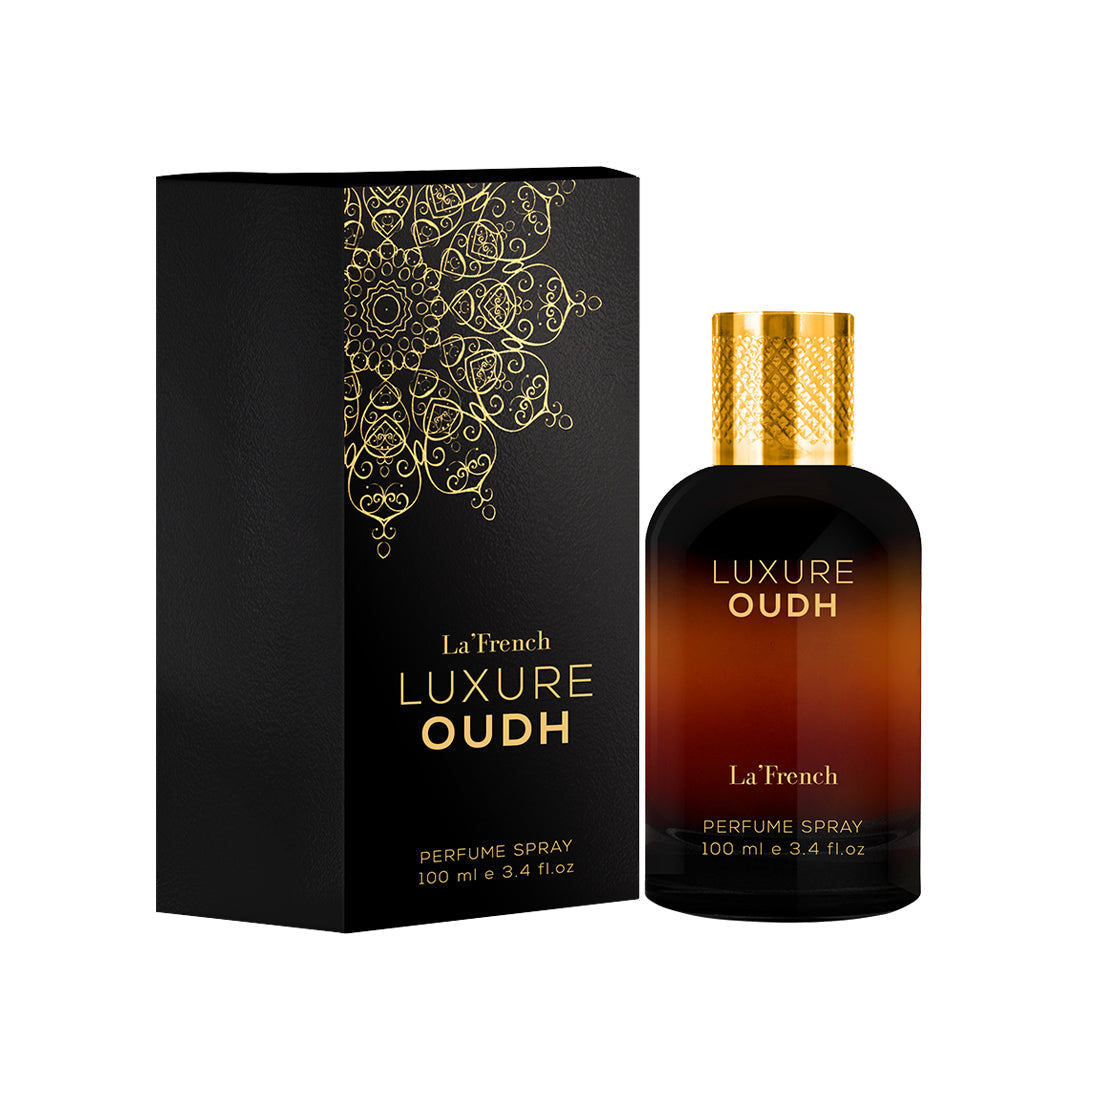 Luxure Oudh perfume